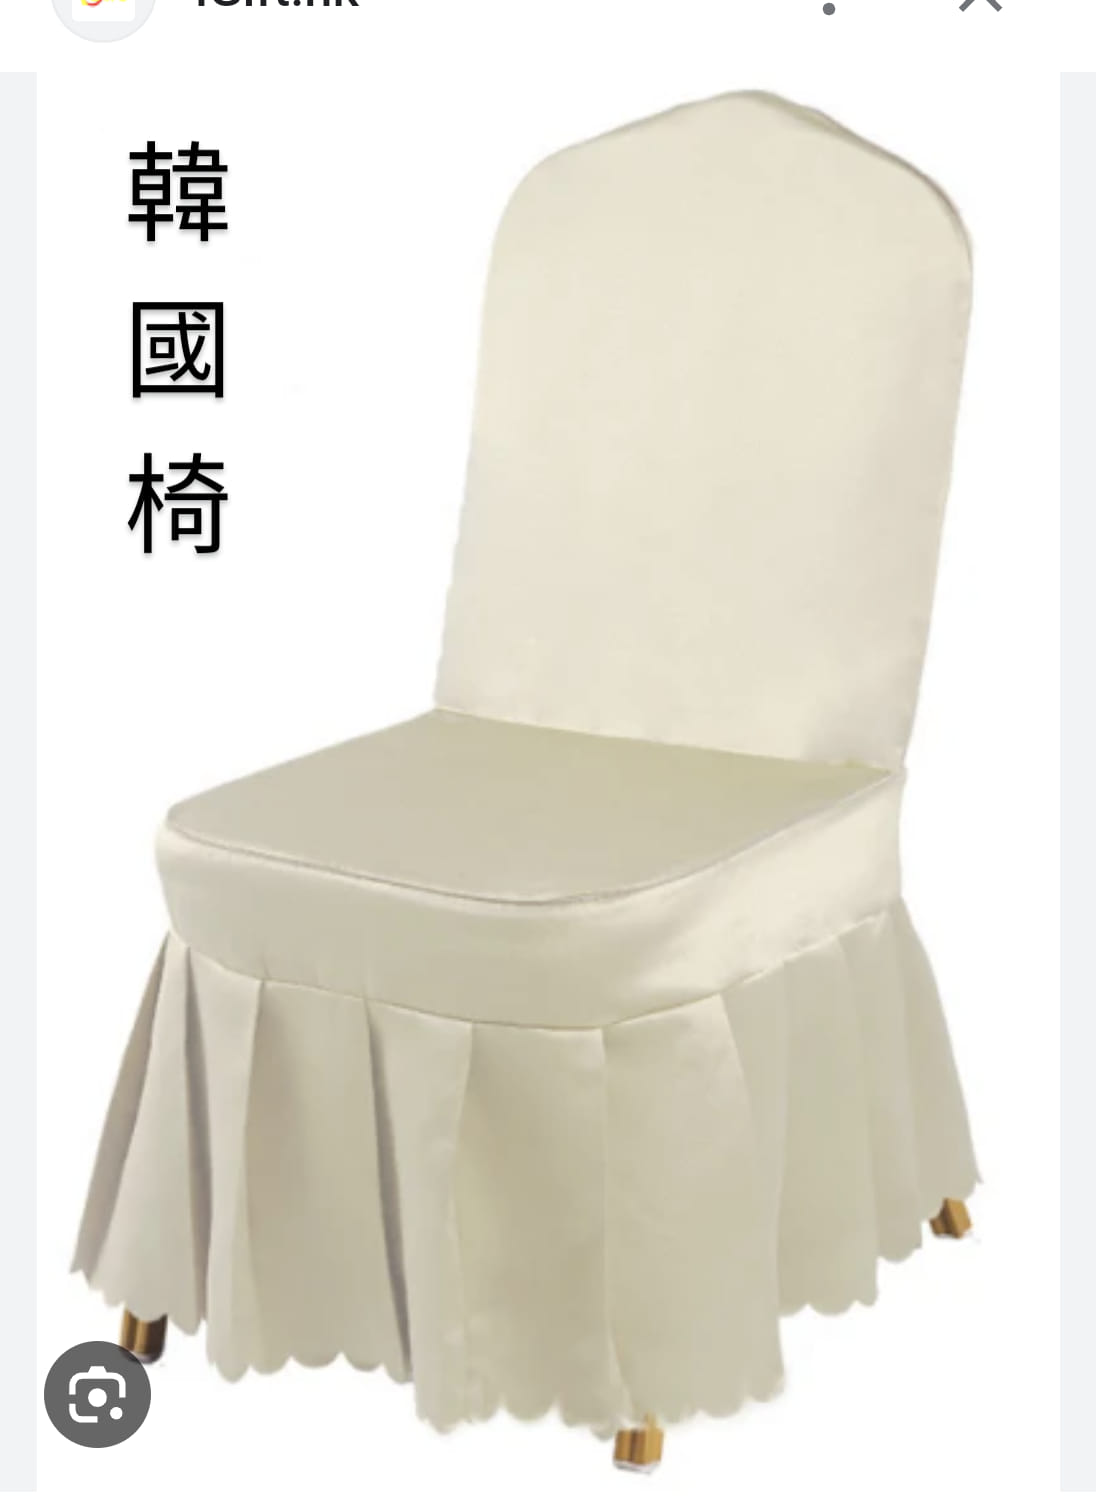 韓國椅 